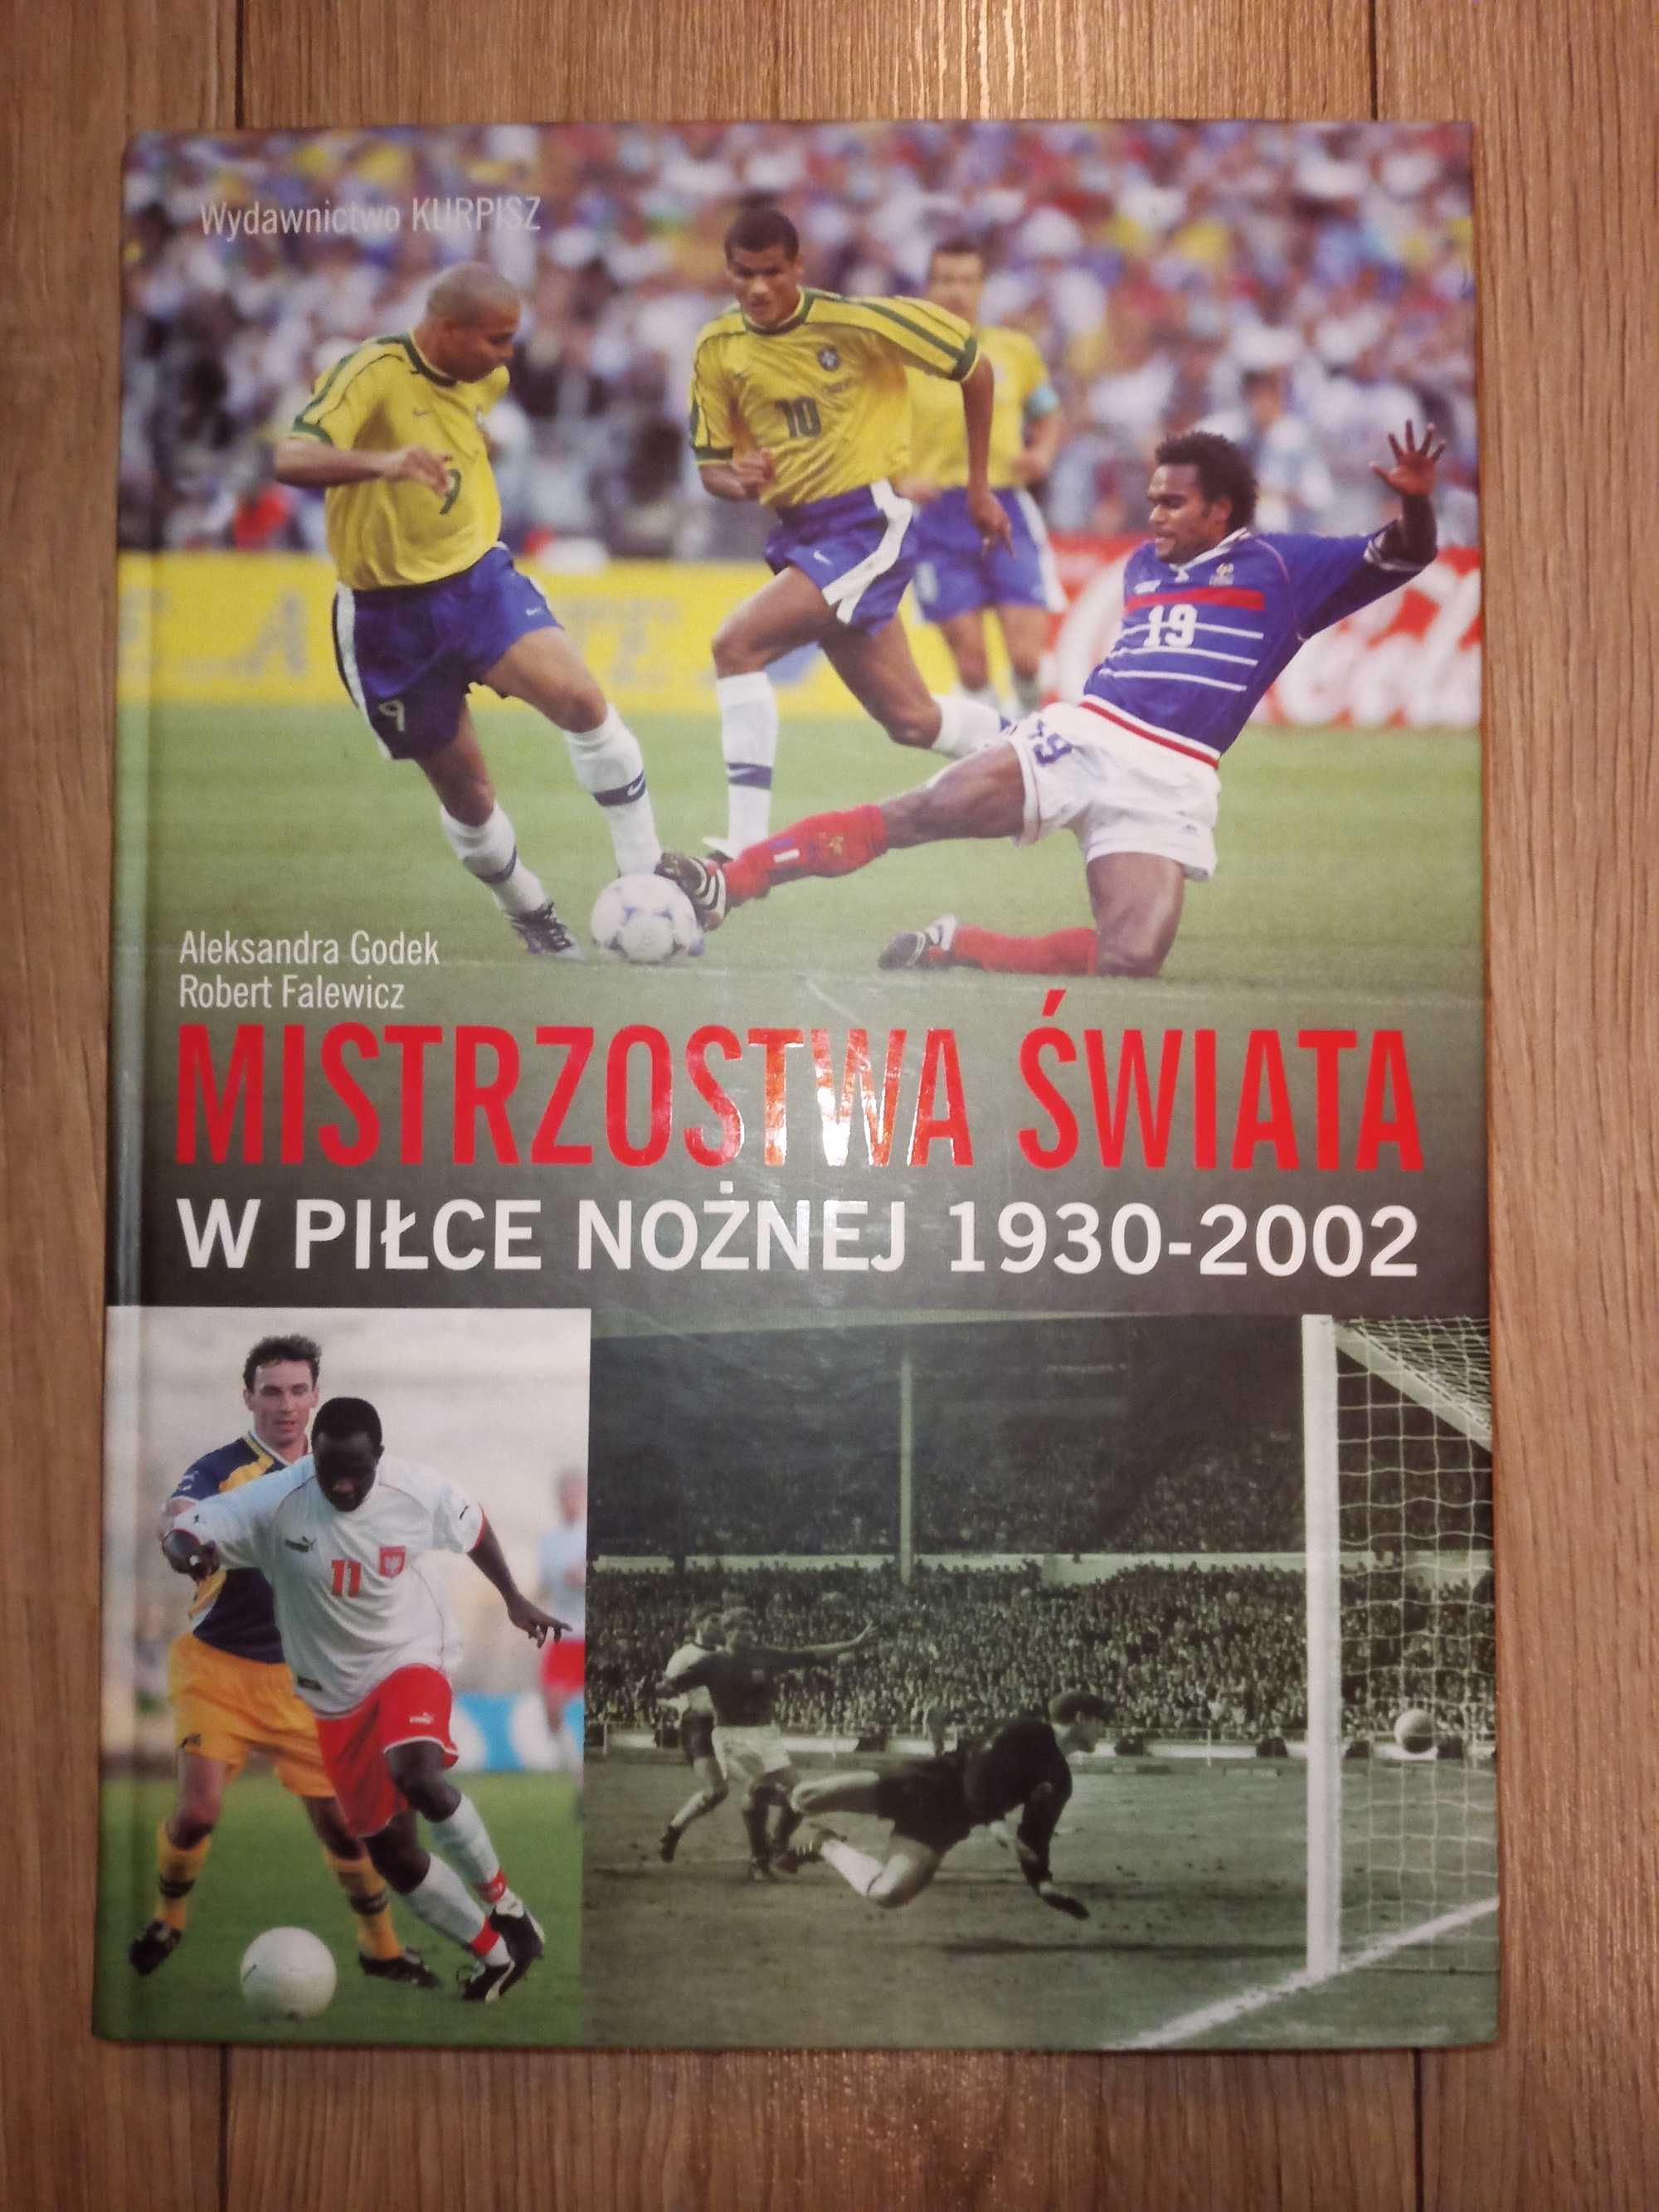 Książka "Mistrzostwa świata w piłce nożnej 1930/2002"